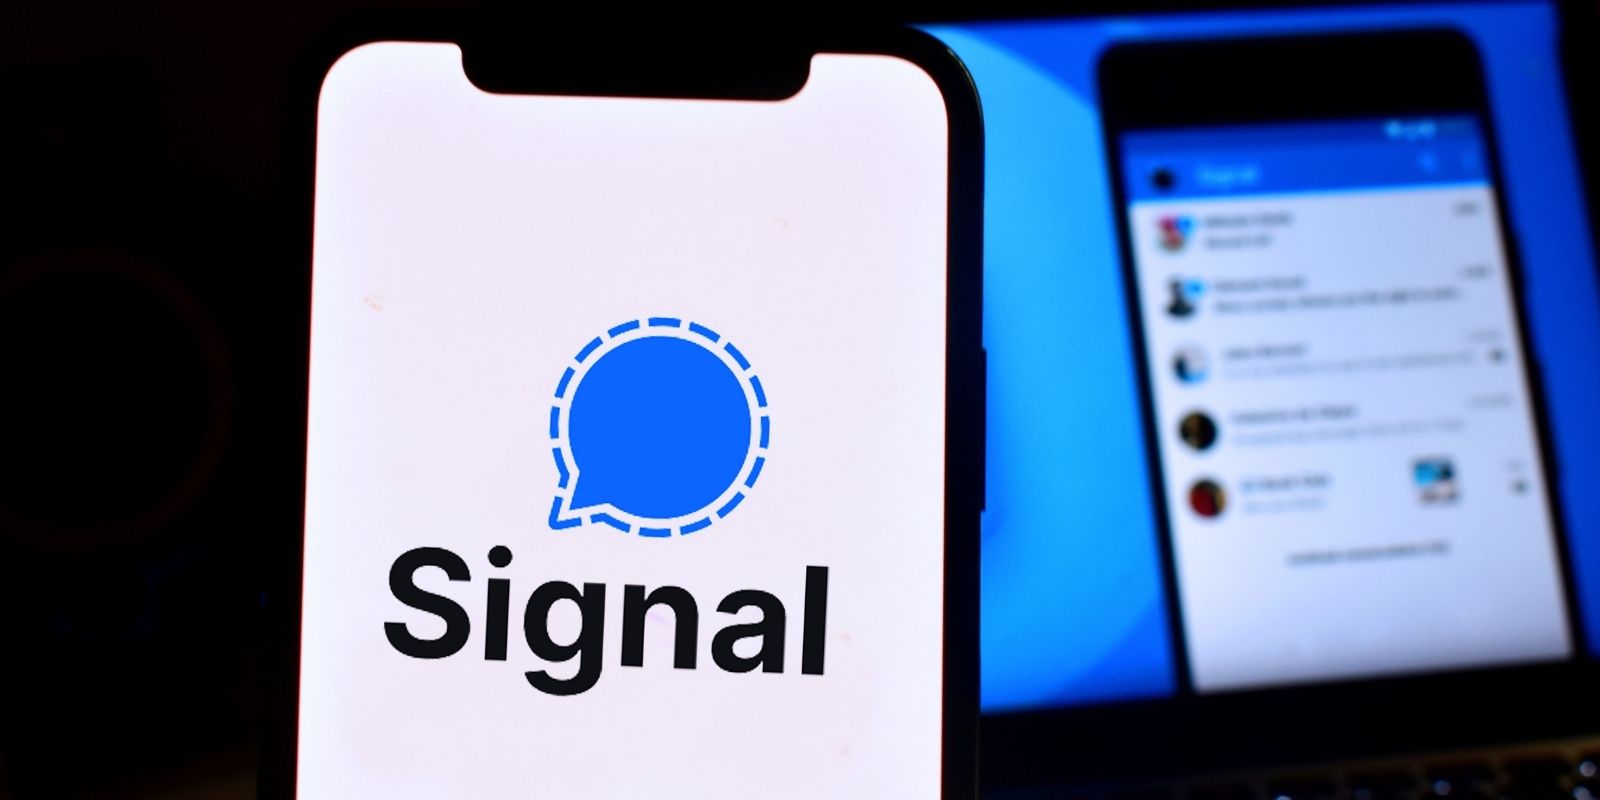 L'application Signal explore l'intégration d'une solution de paiements en crypto-monnaies